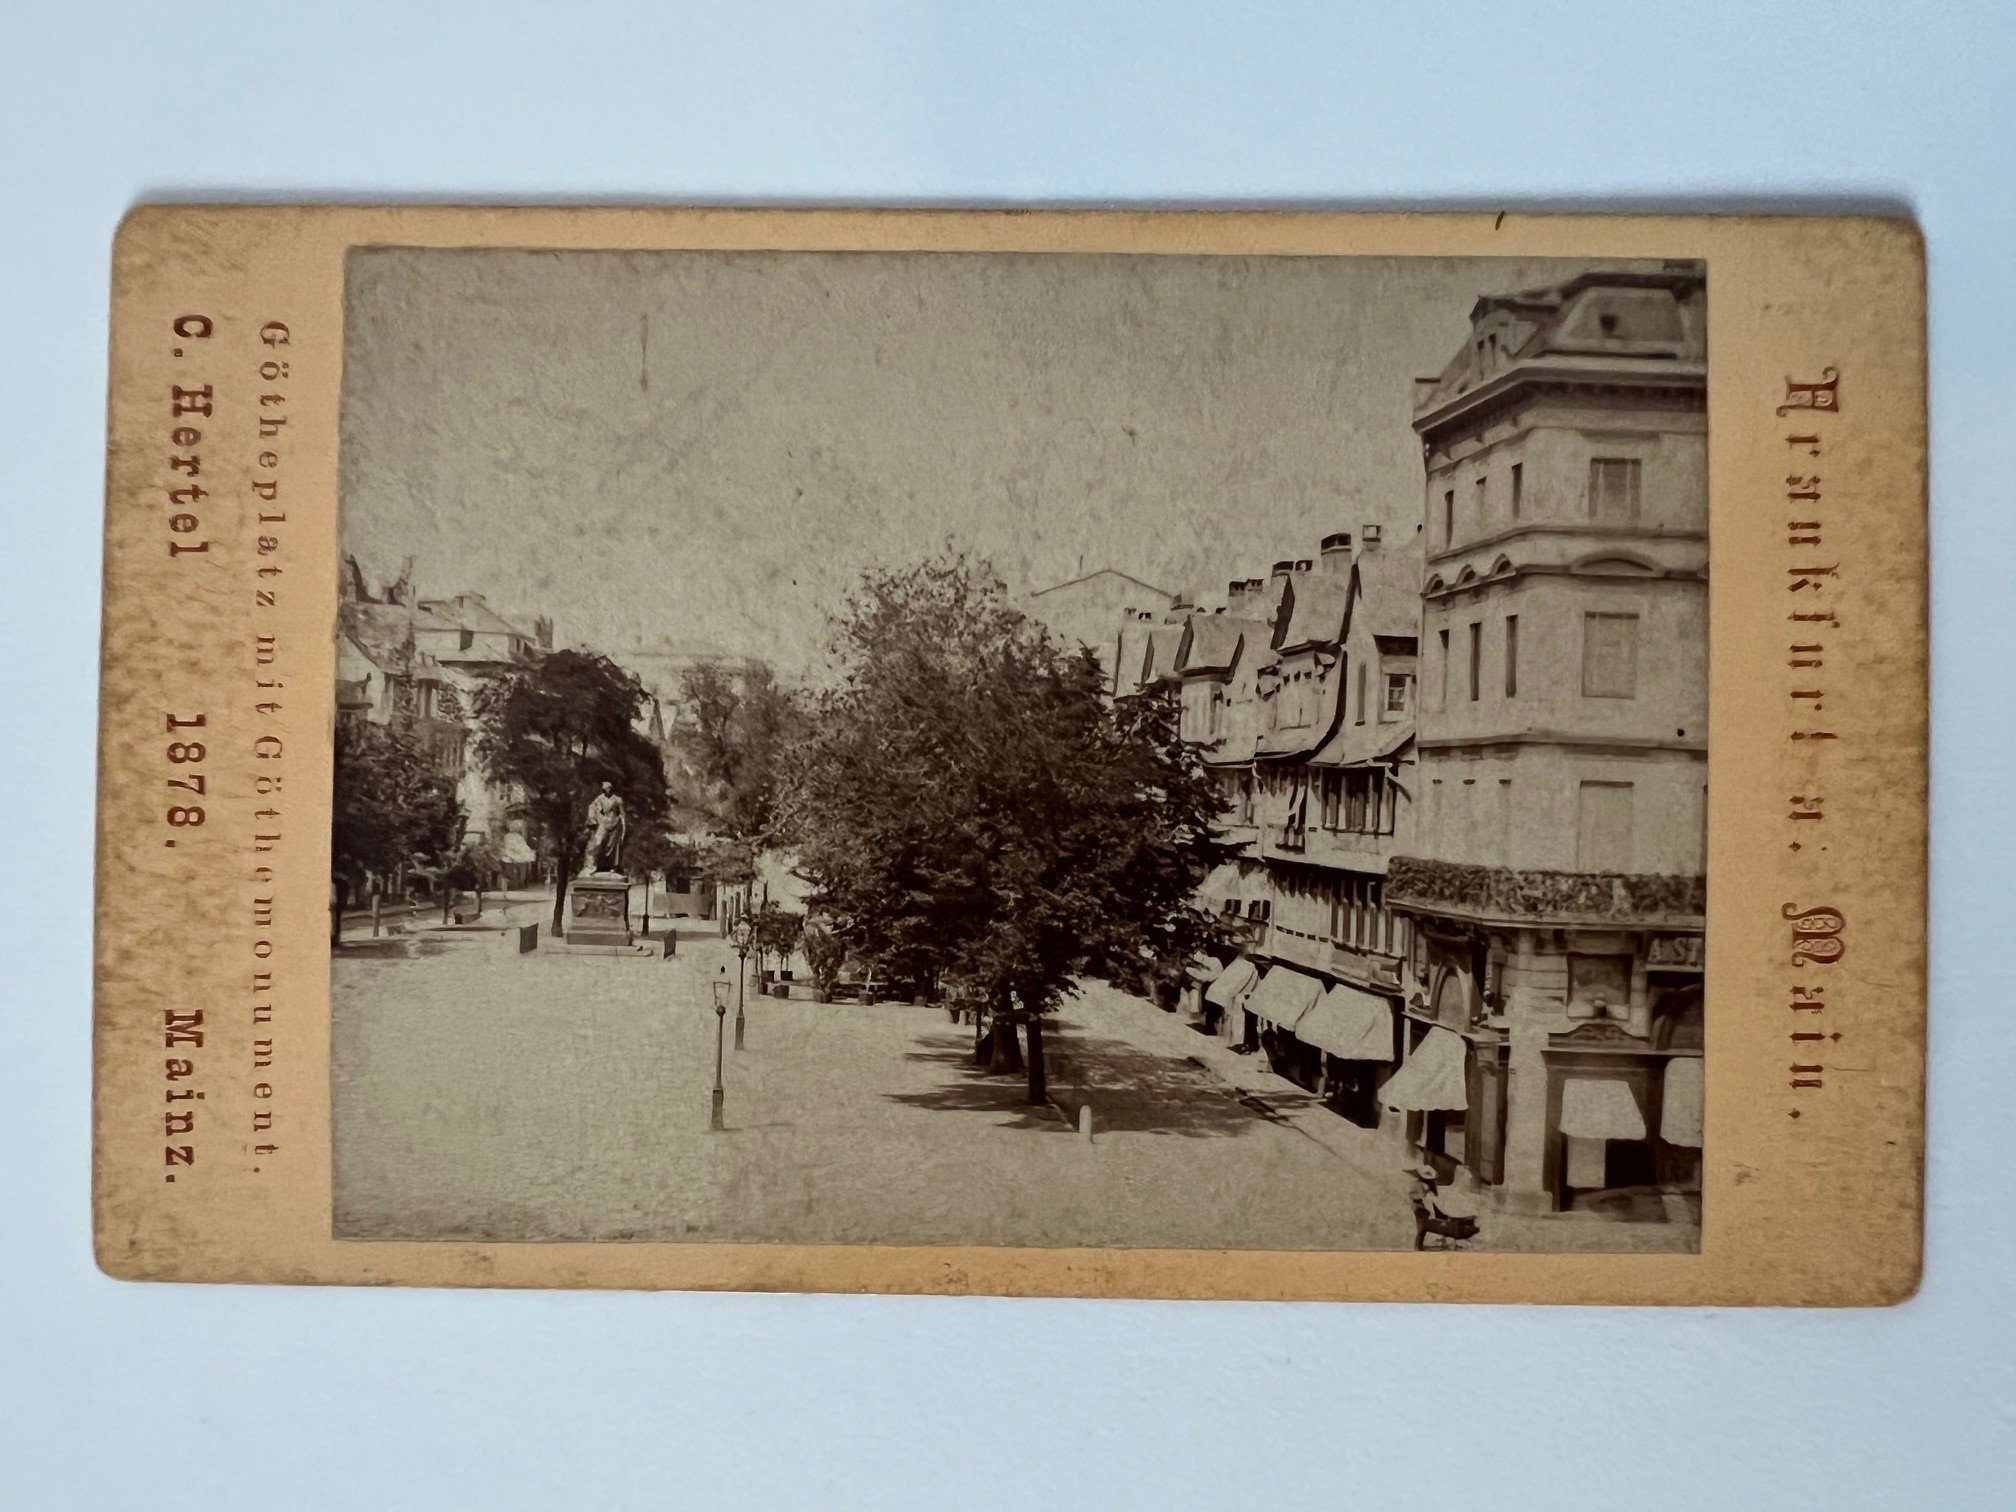 CdV, Carl Hertel, Frankfurt, Götheplatz mit Göthemonument, 1878. (Taunus-Rhein-Main - Regionalgeschichtliche Sammlung Dr. Stefan Naas CC BY-NC-SA)